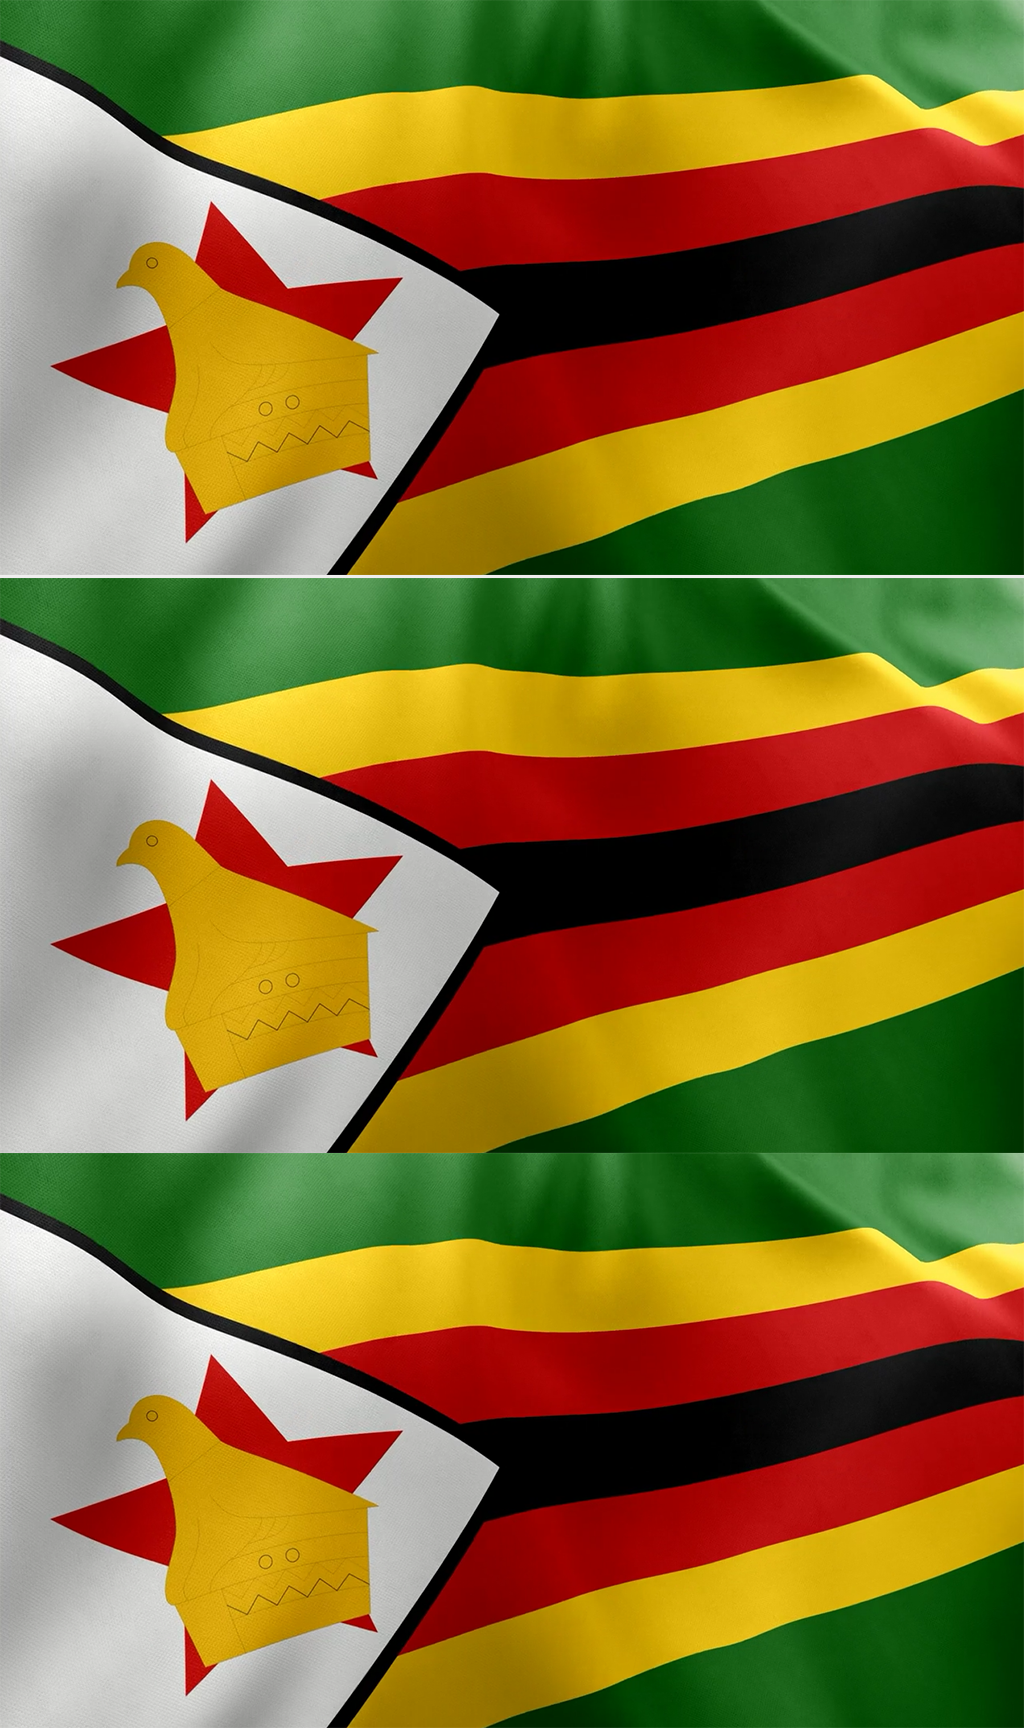 津巴布韦国旗在风中飘扬